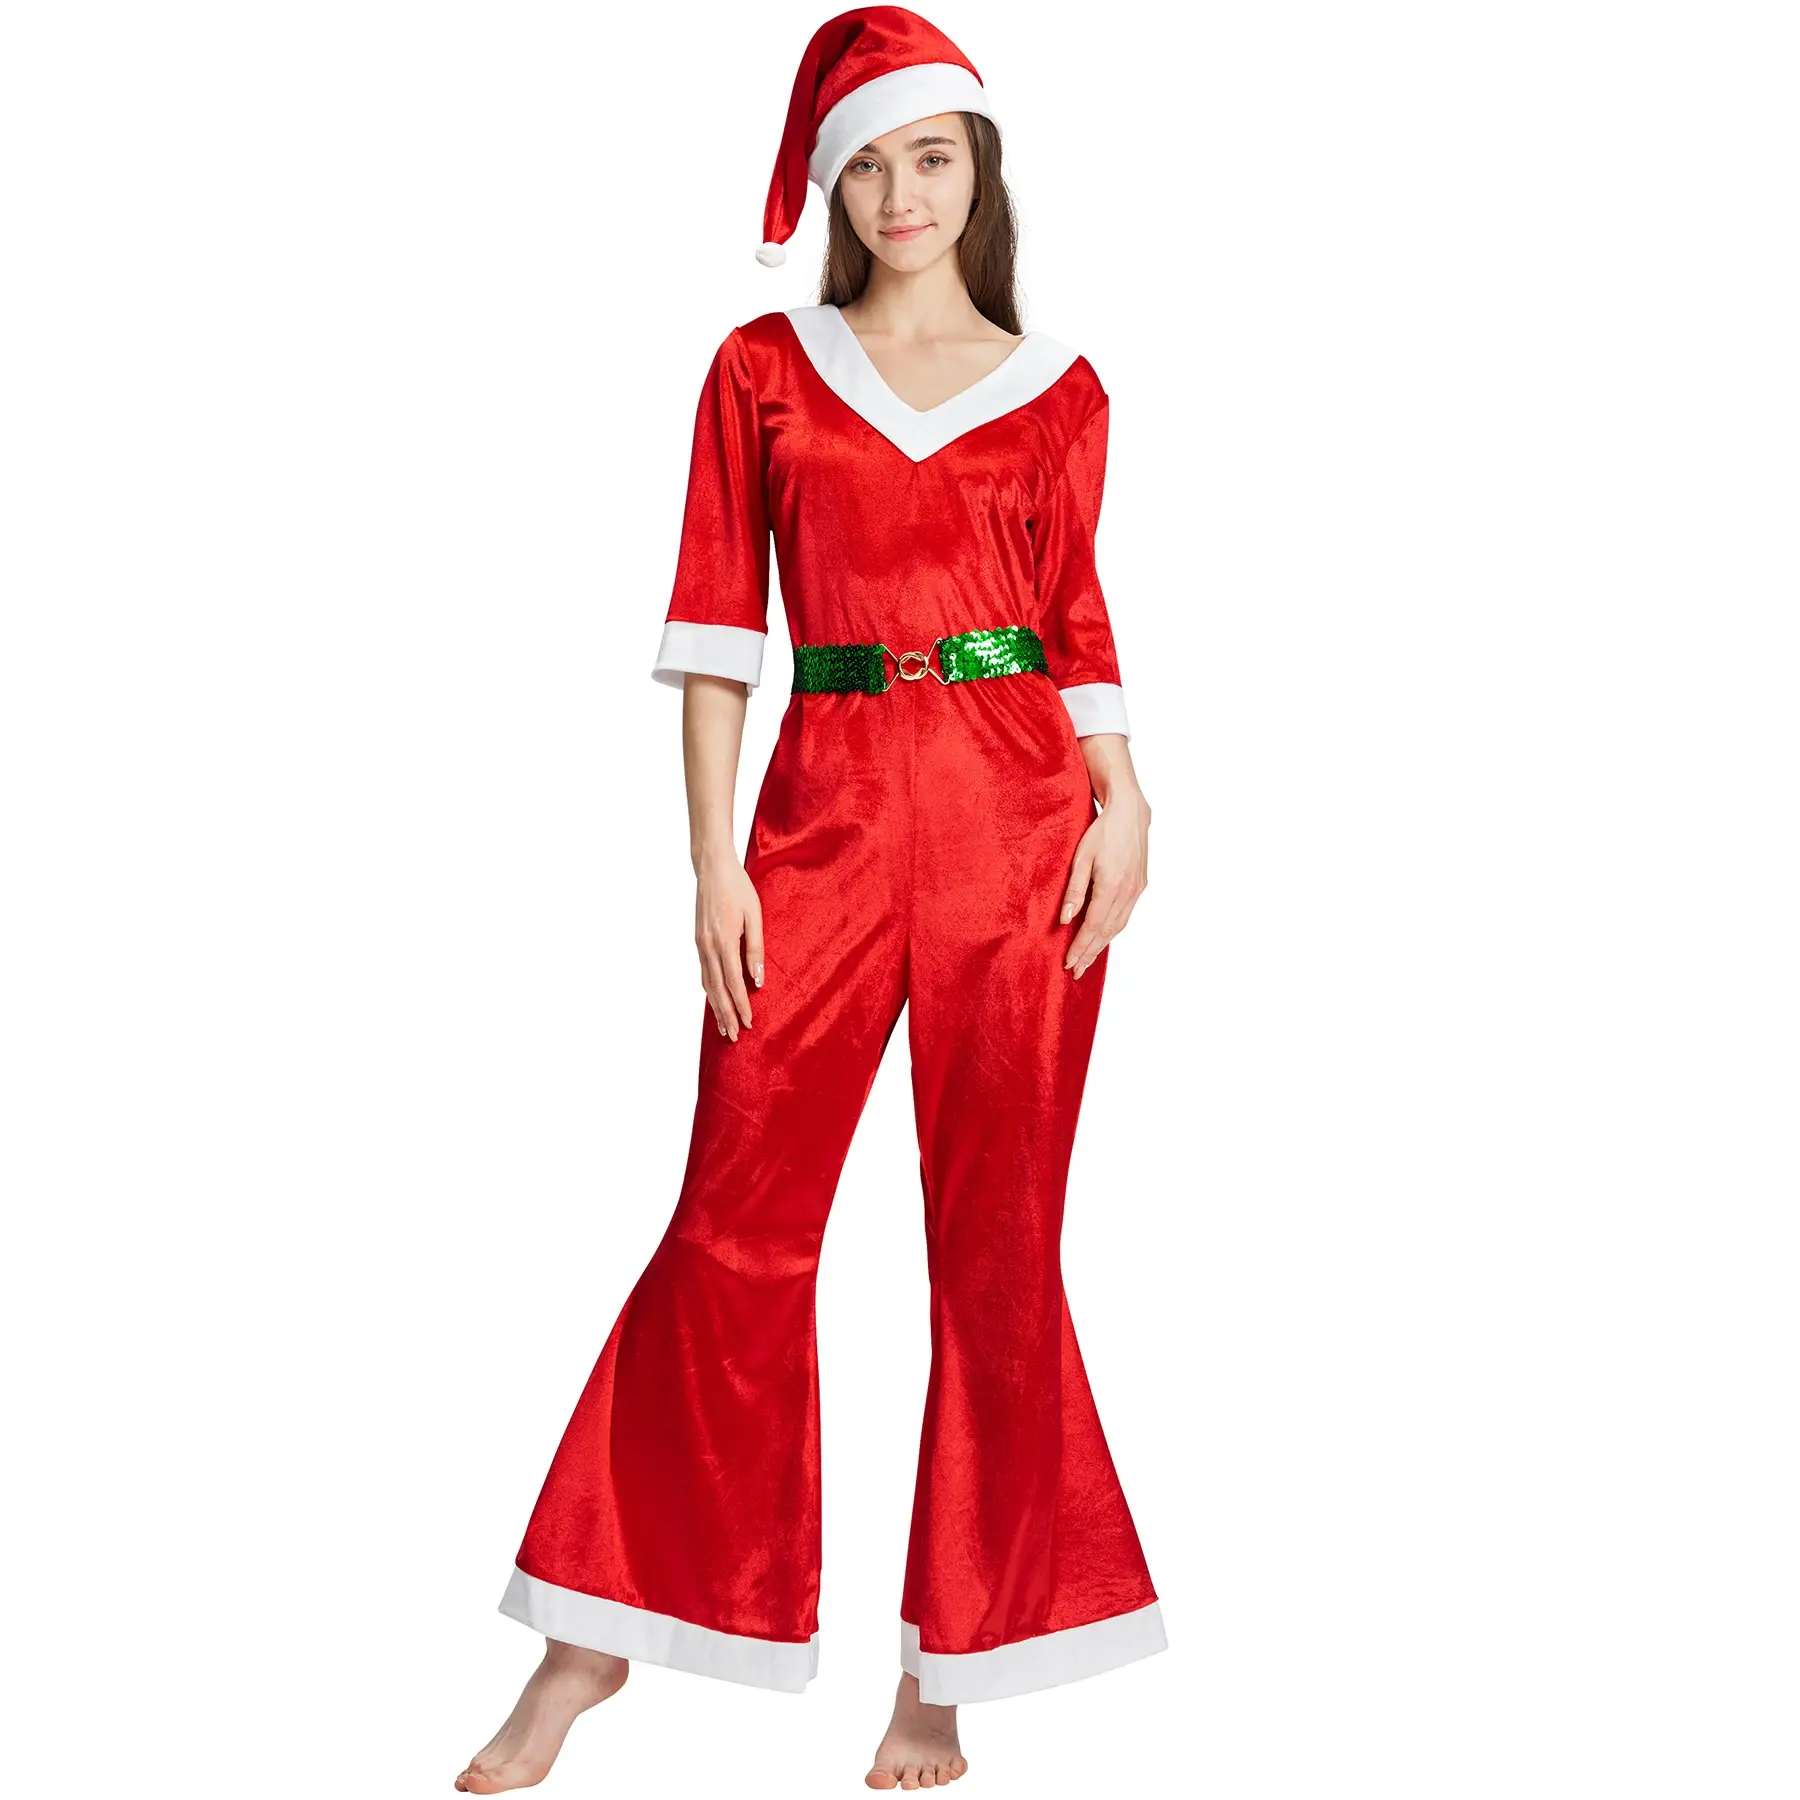 زي عيد الميلاد للسيدات، بدلة الكريسماس بقصة عنق على شكل حرف V مع حزام قبعة طقم 3 قطع ملابس تنكرية واسعة من الفرو بدلة سانتا كلوز حمراء اللون